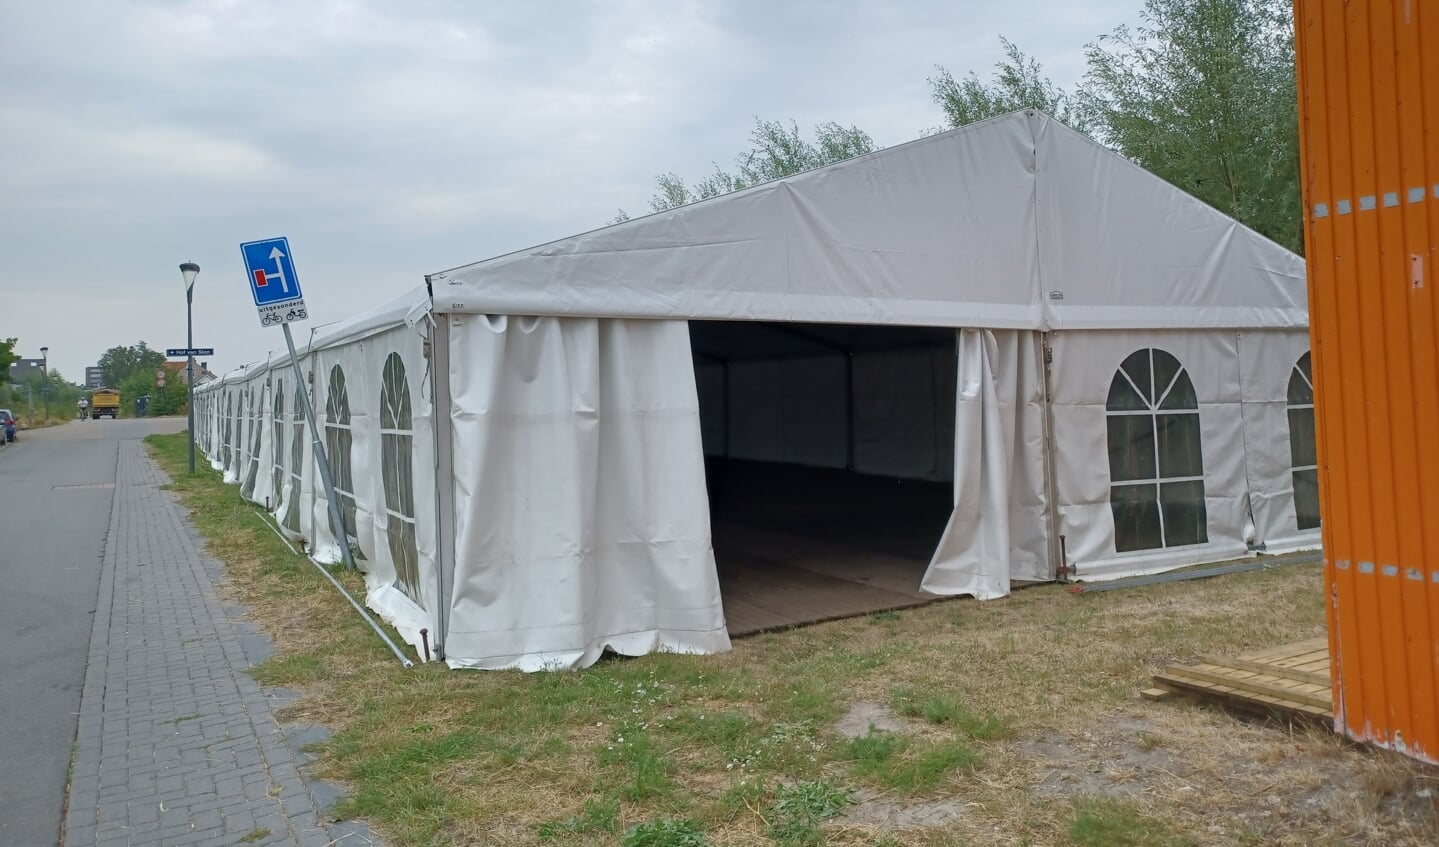 De tent werd maandag 15 augustus opgezet.